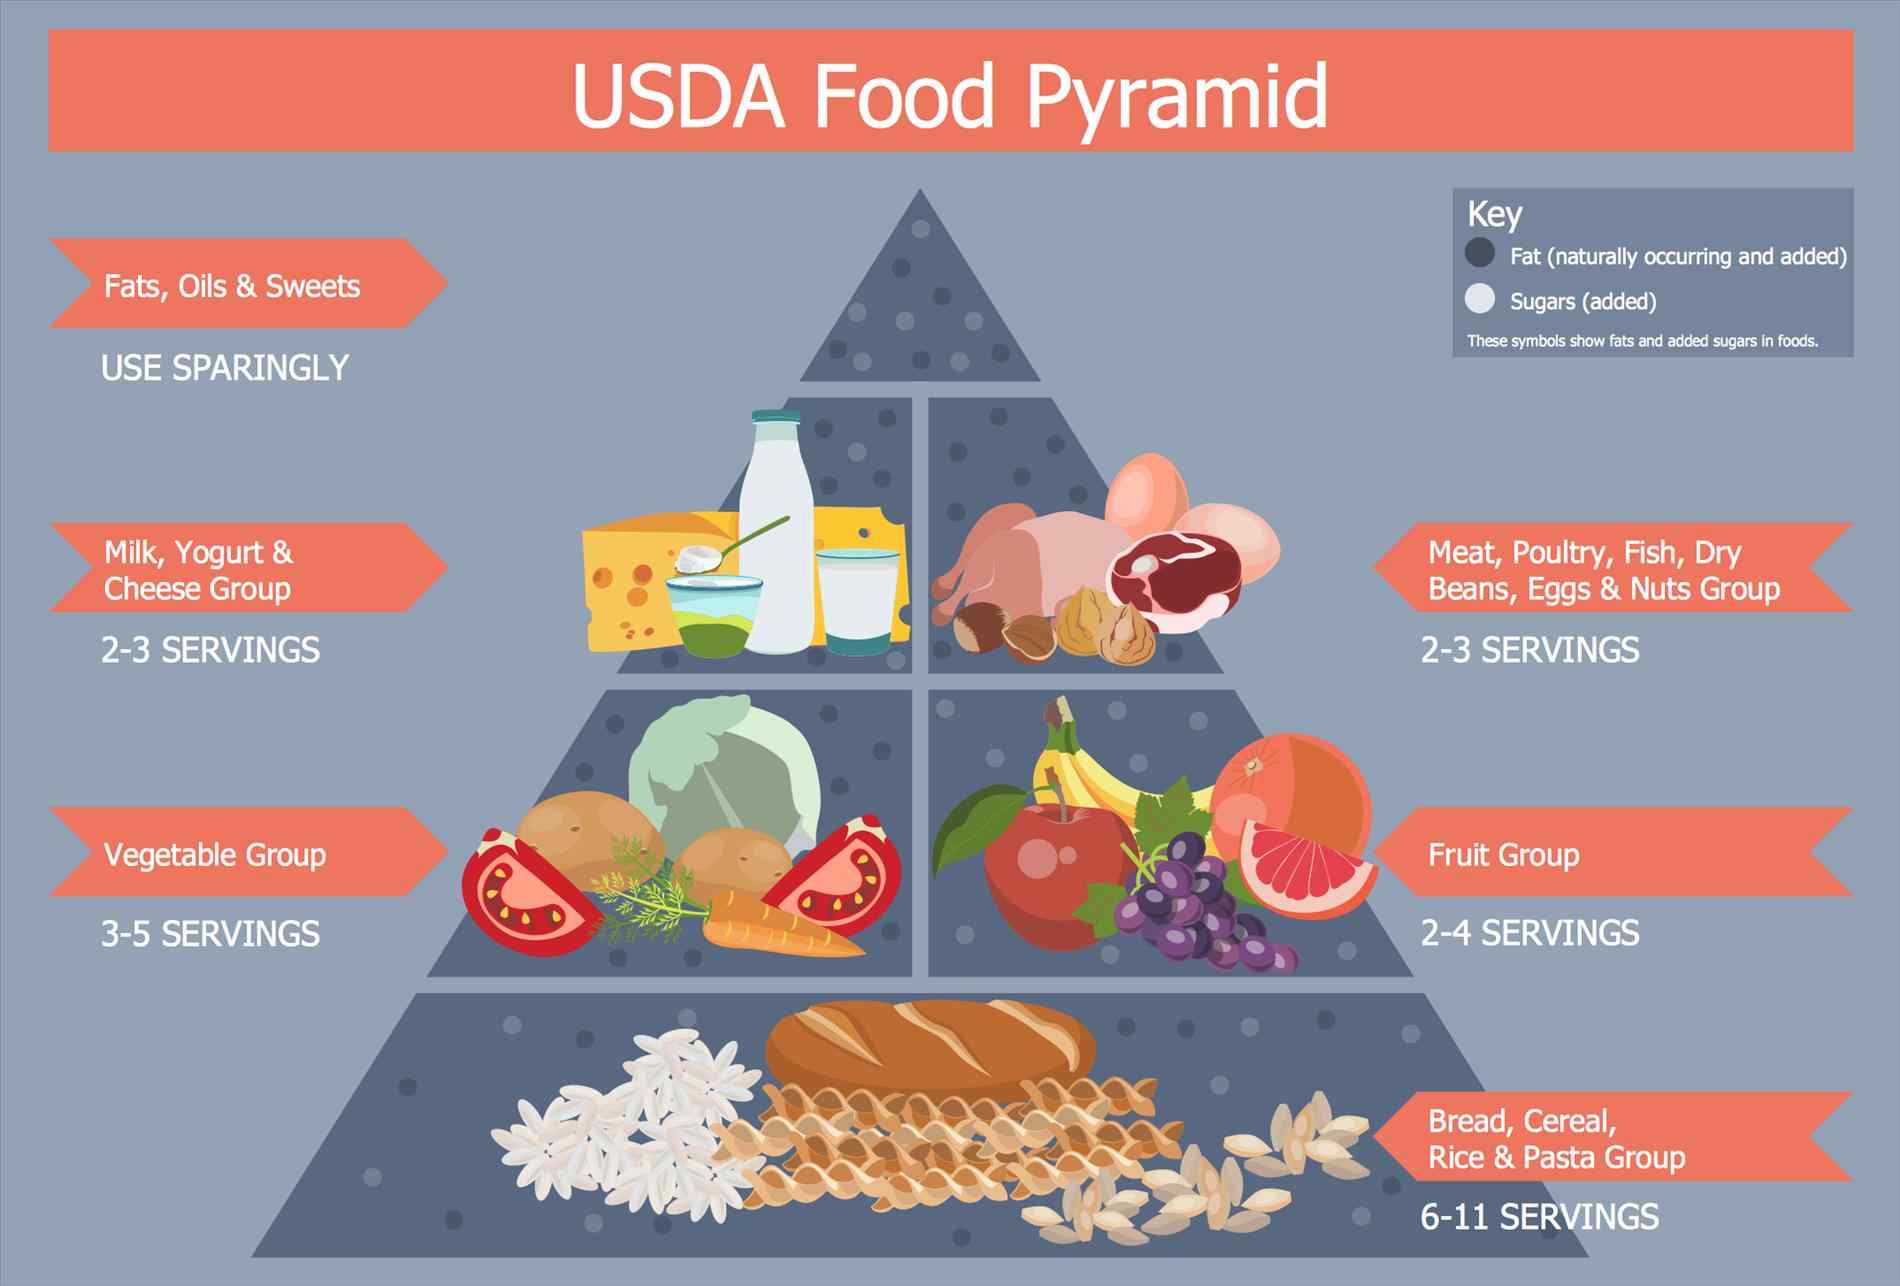 The US FDA Food Pyramid.

-u/yawmush